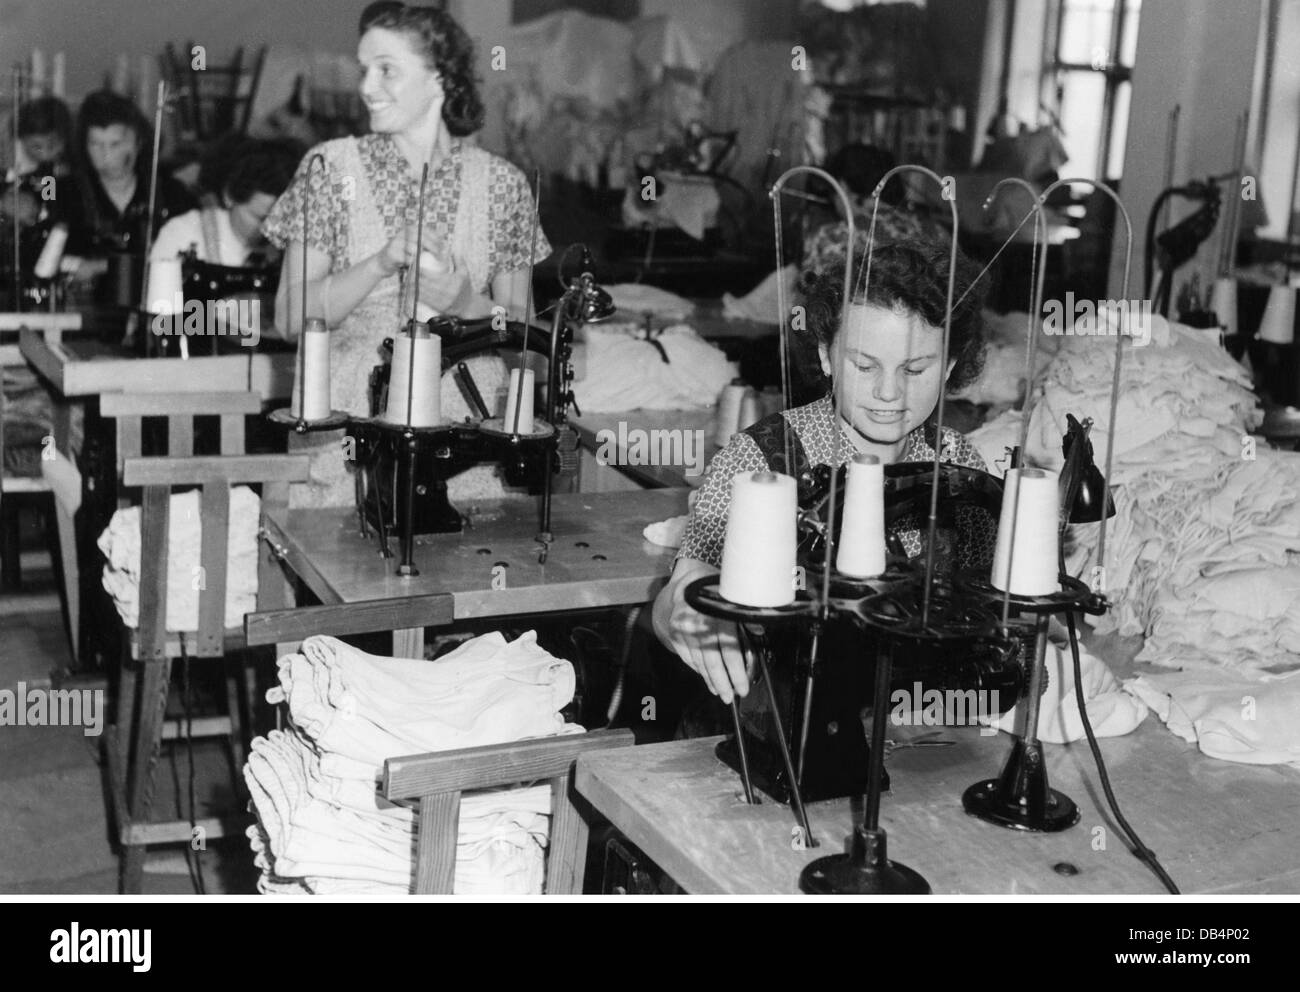 Période d'après-guerre, gens, travailleurs allemands dans l'usine de coton, Stockholm, début des années 1950, droits additionnels-Clearences-non disponible Banque D'Images